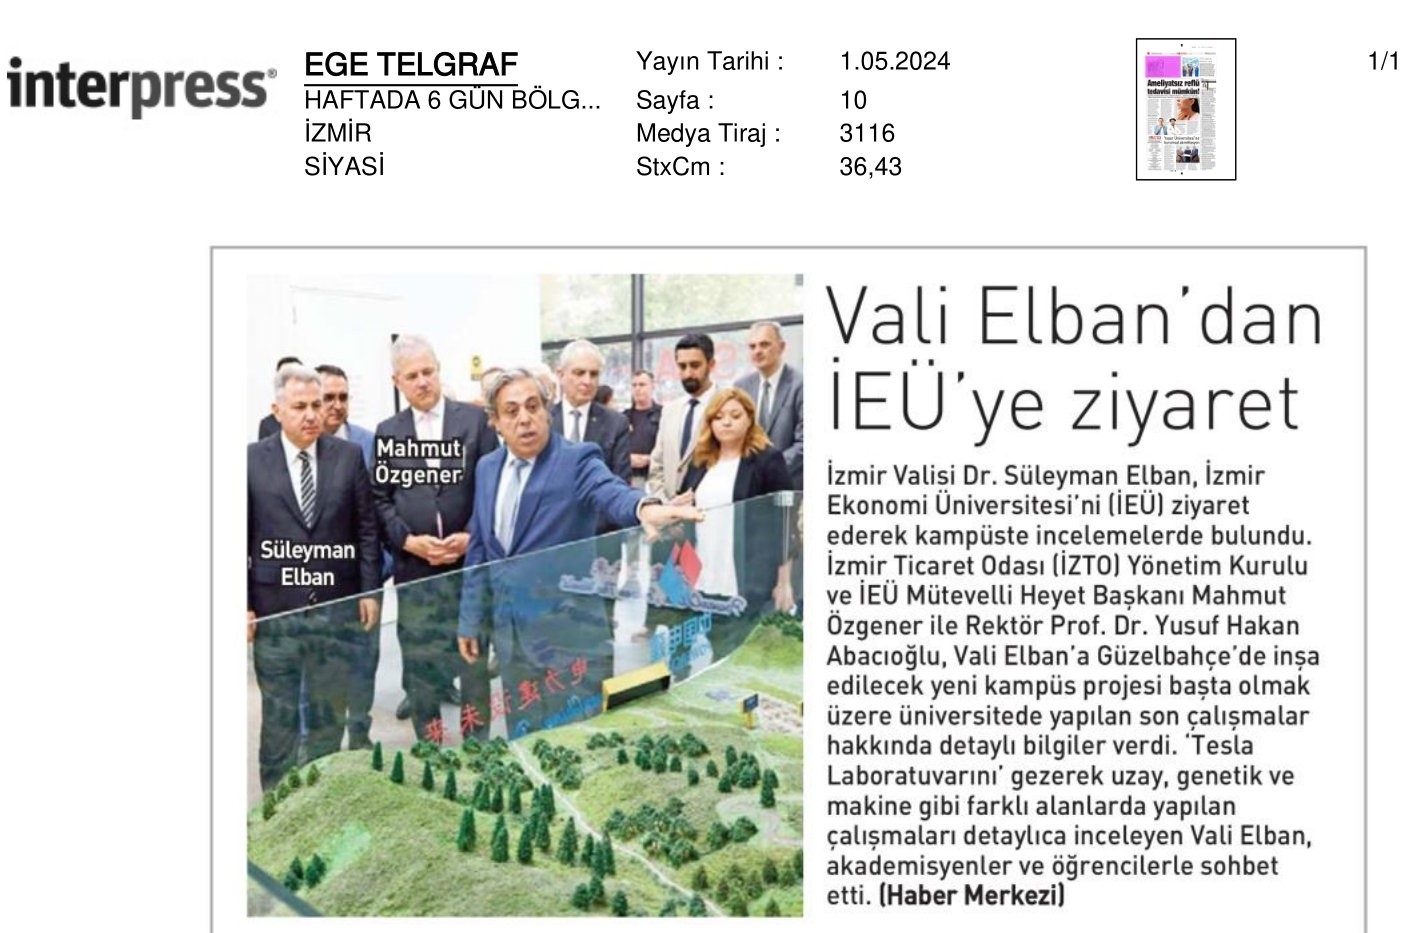 Vali Elban’dan İzmir Ekonomi’ye Ziyaret